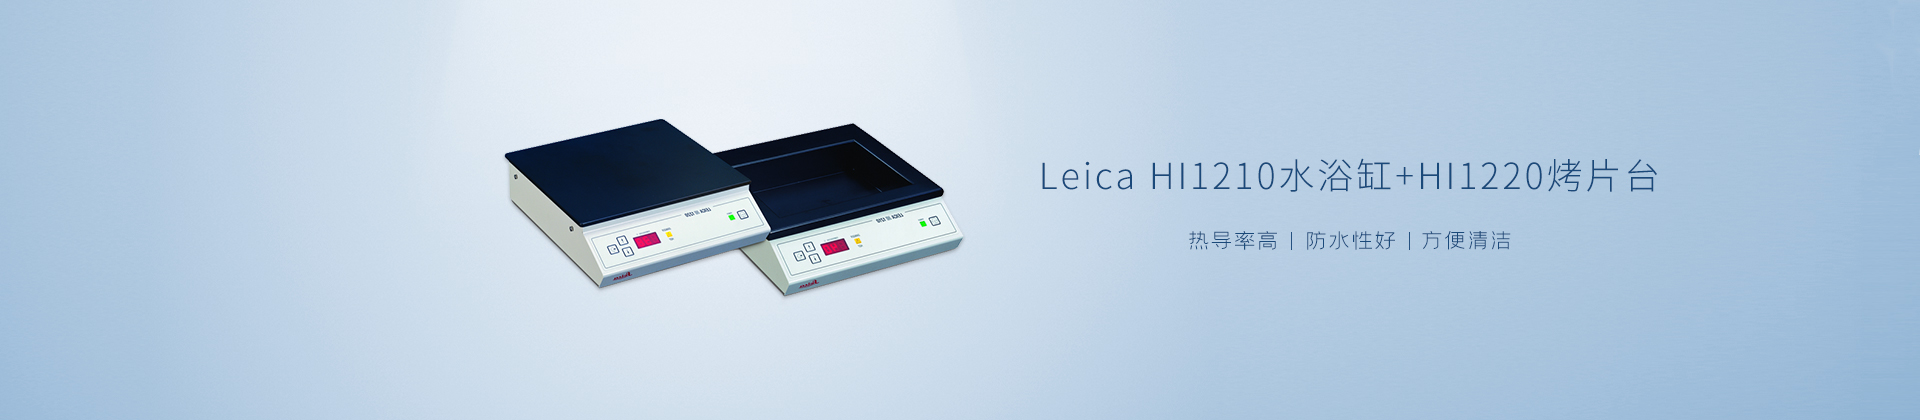 Leica HI1210水浴缸/HI1220烤片台